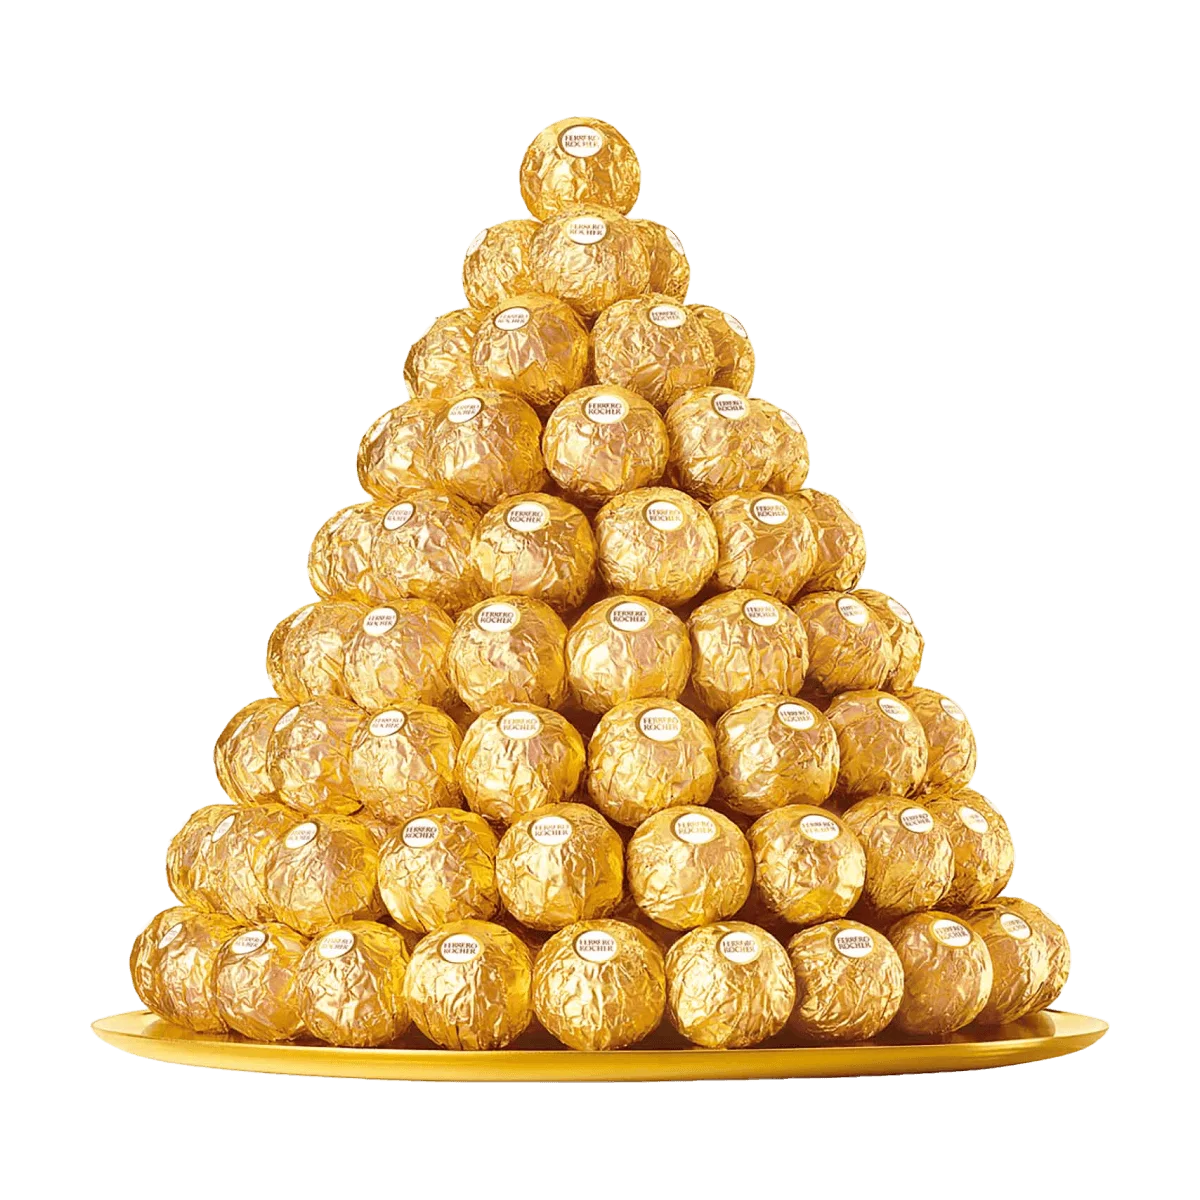 Ferrero Rocher 25 Stk, 312 g